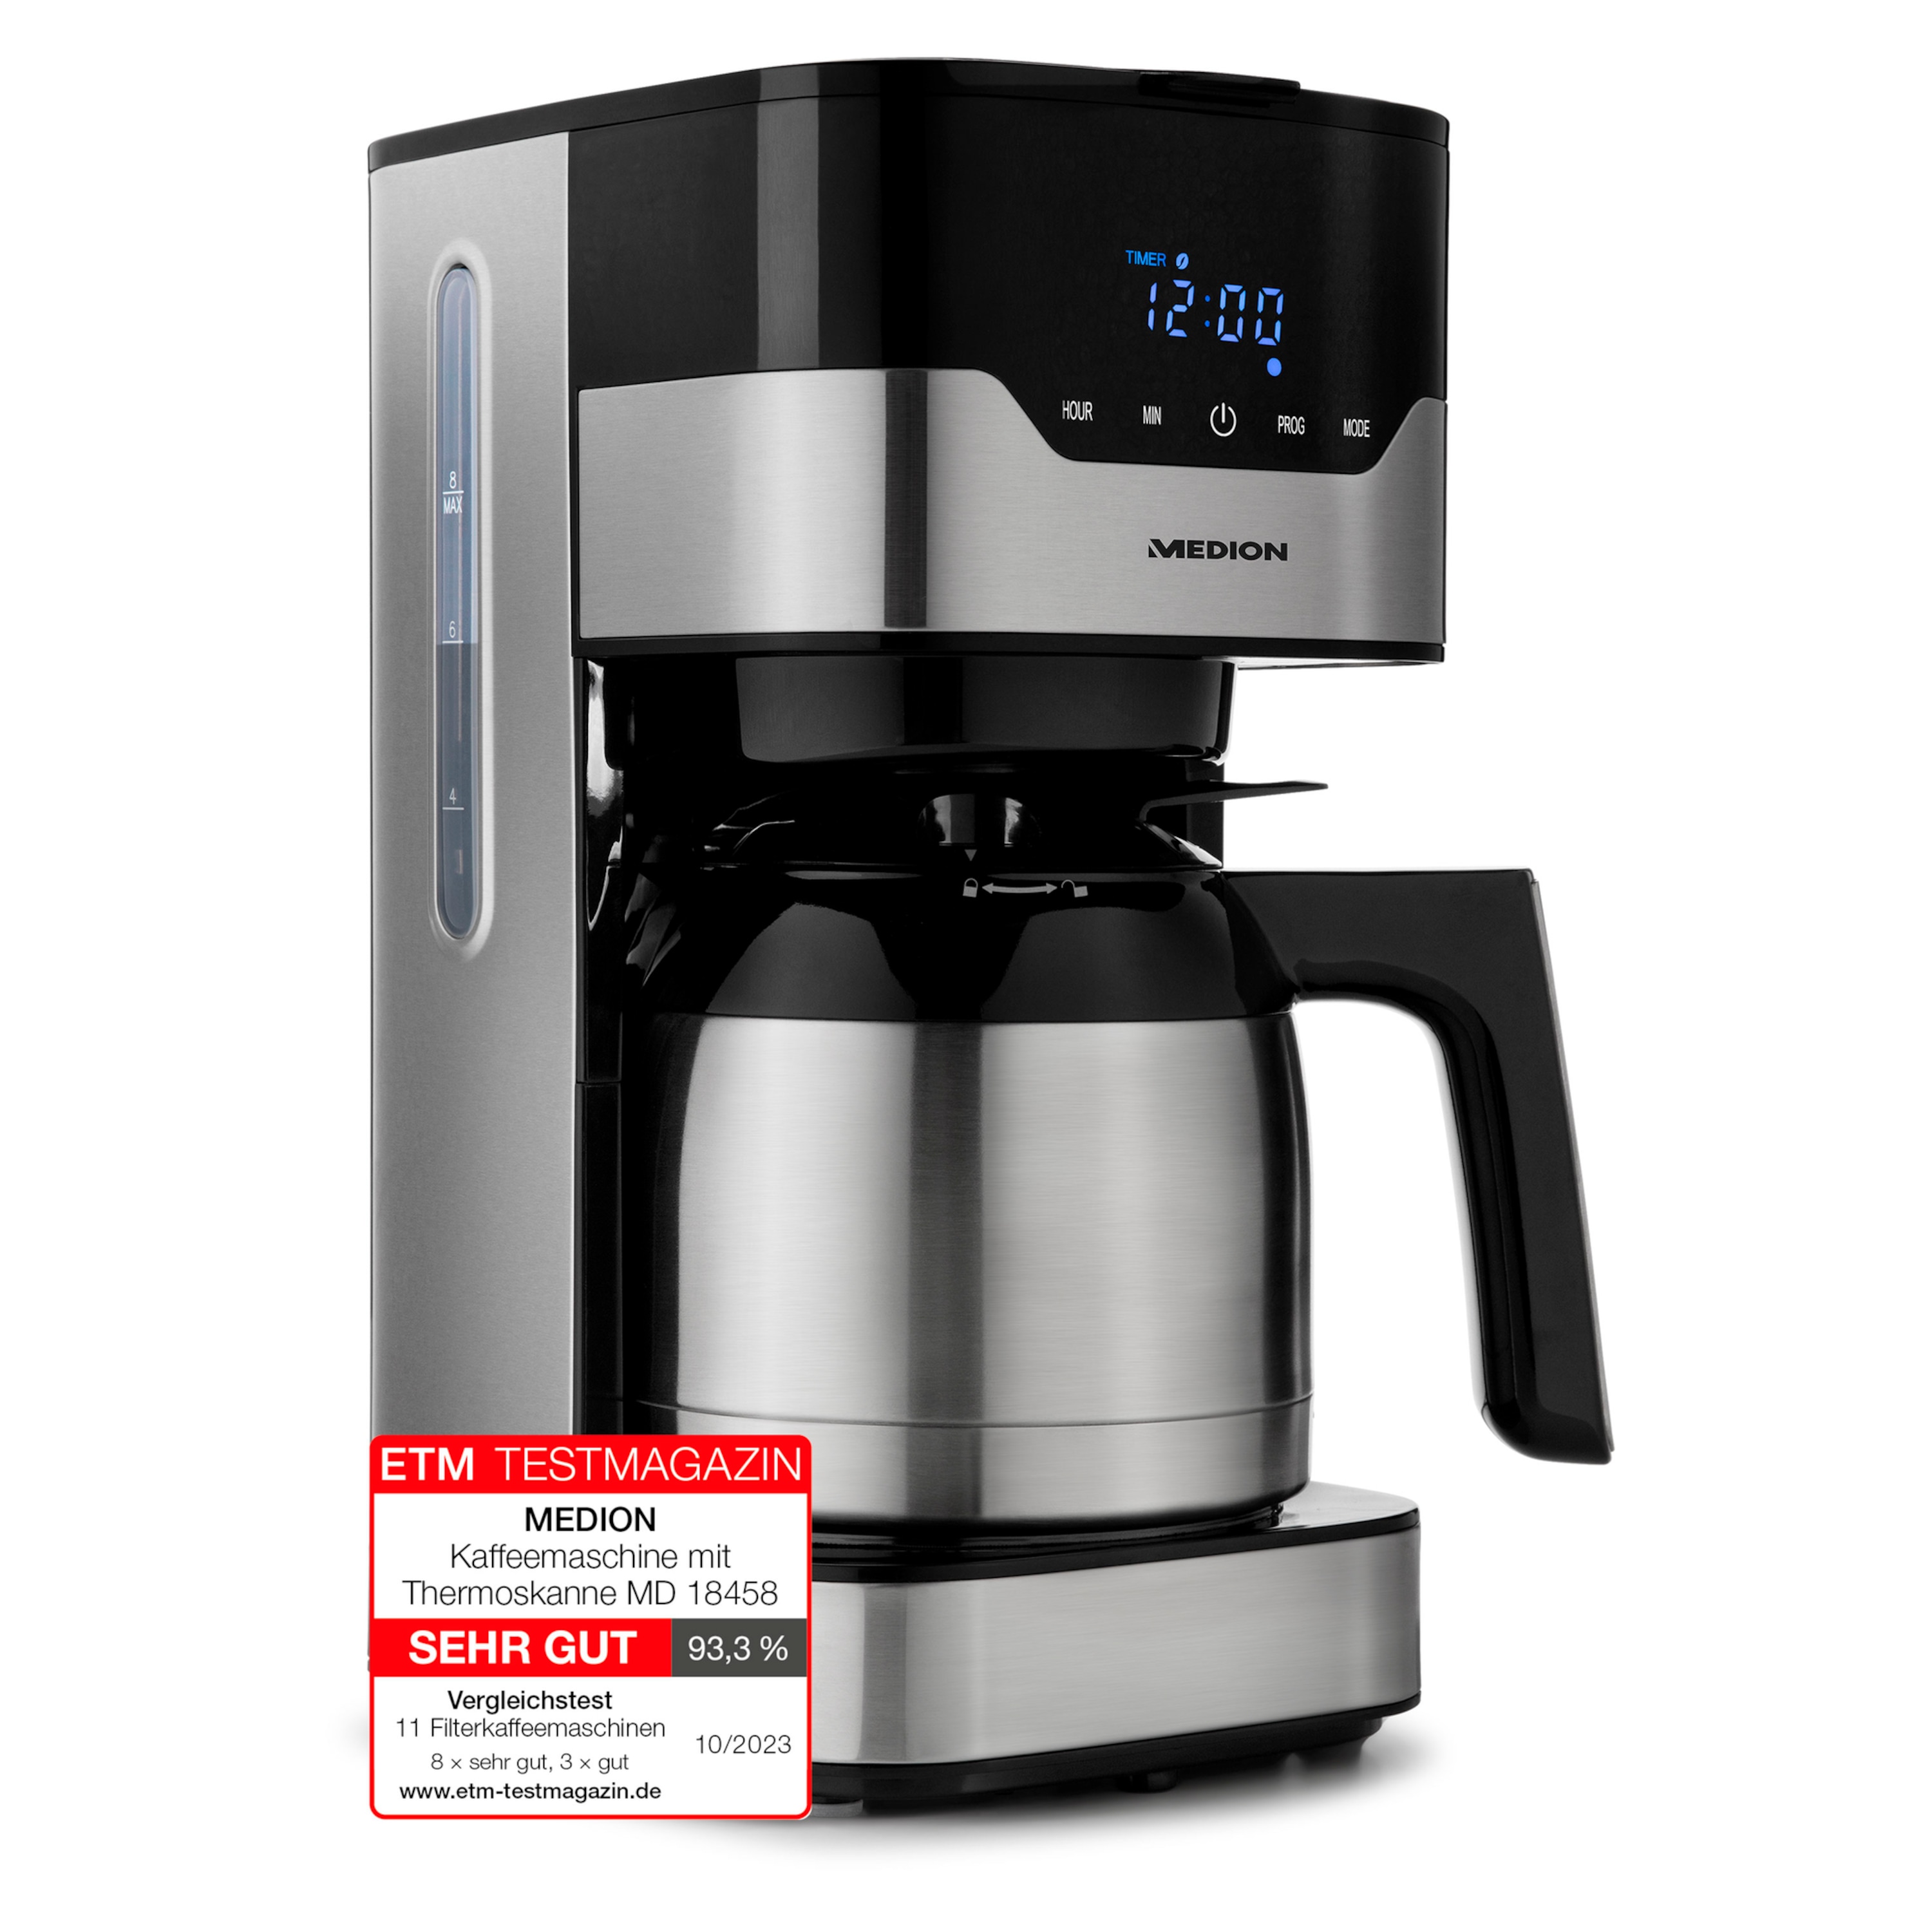 MEDION® Kaffeemaschine mit Thermokanne MD 18458, Timer-Funktion, Tropf-Stopp, 900 Watt, 1,2 Liter Fassungsvermögen, Aromawahlschalter